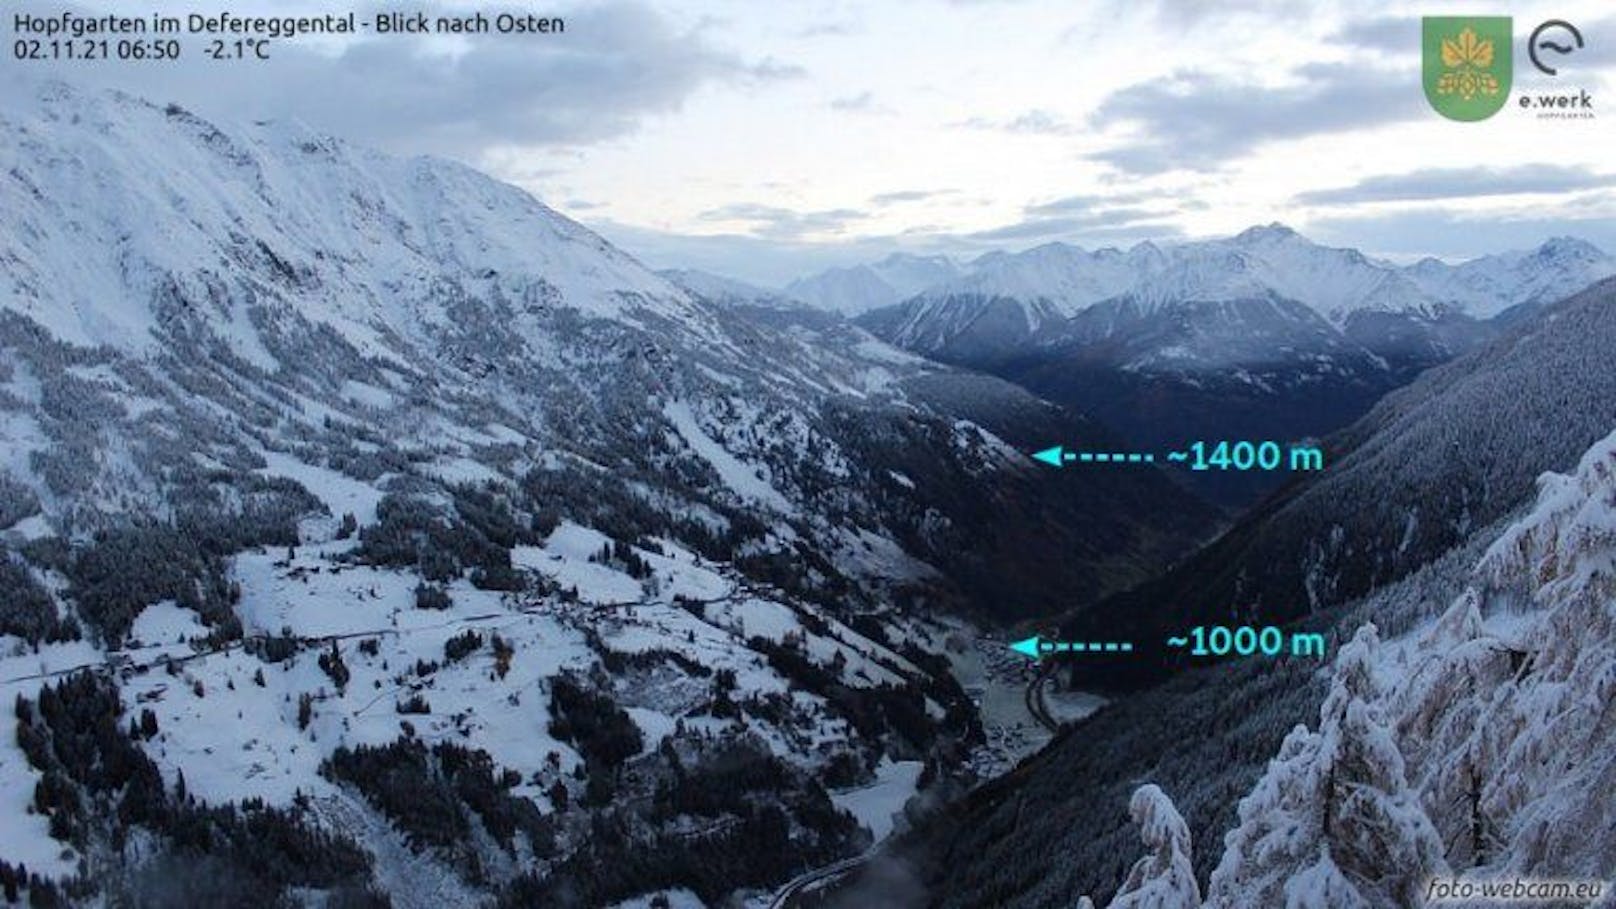 Hopfgarten im Defereggental, Osttirol. Gut sichtbar ist der Unterschied in der Schneefallgrenze aufgrund der Niederschlagsabkühlung zwischen dem engen Tal (unten im Bild) und der Talmündung / dem Talausgang oben